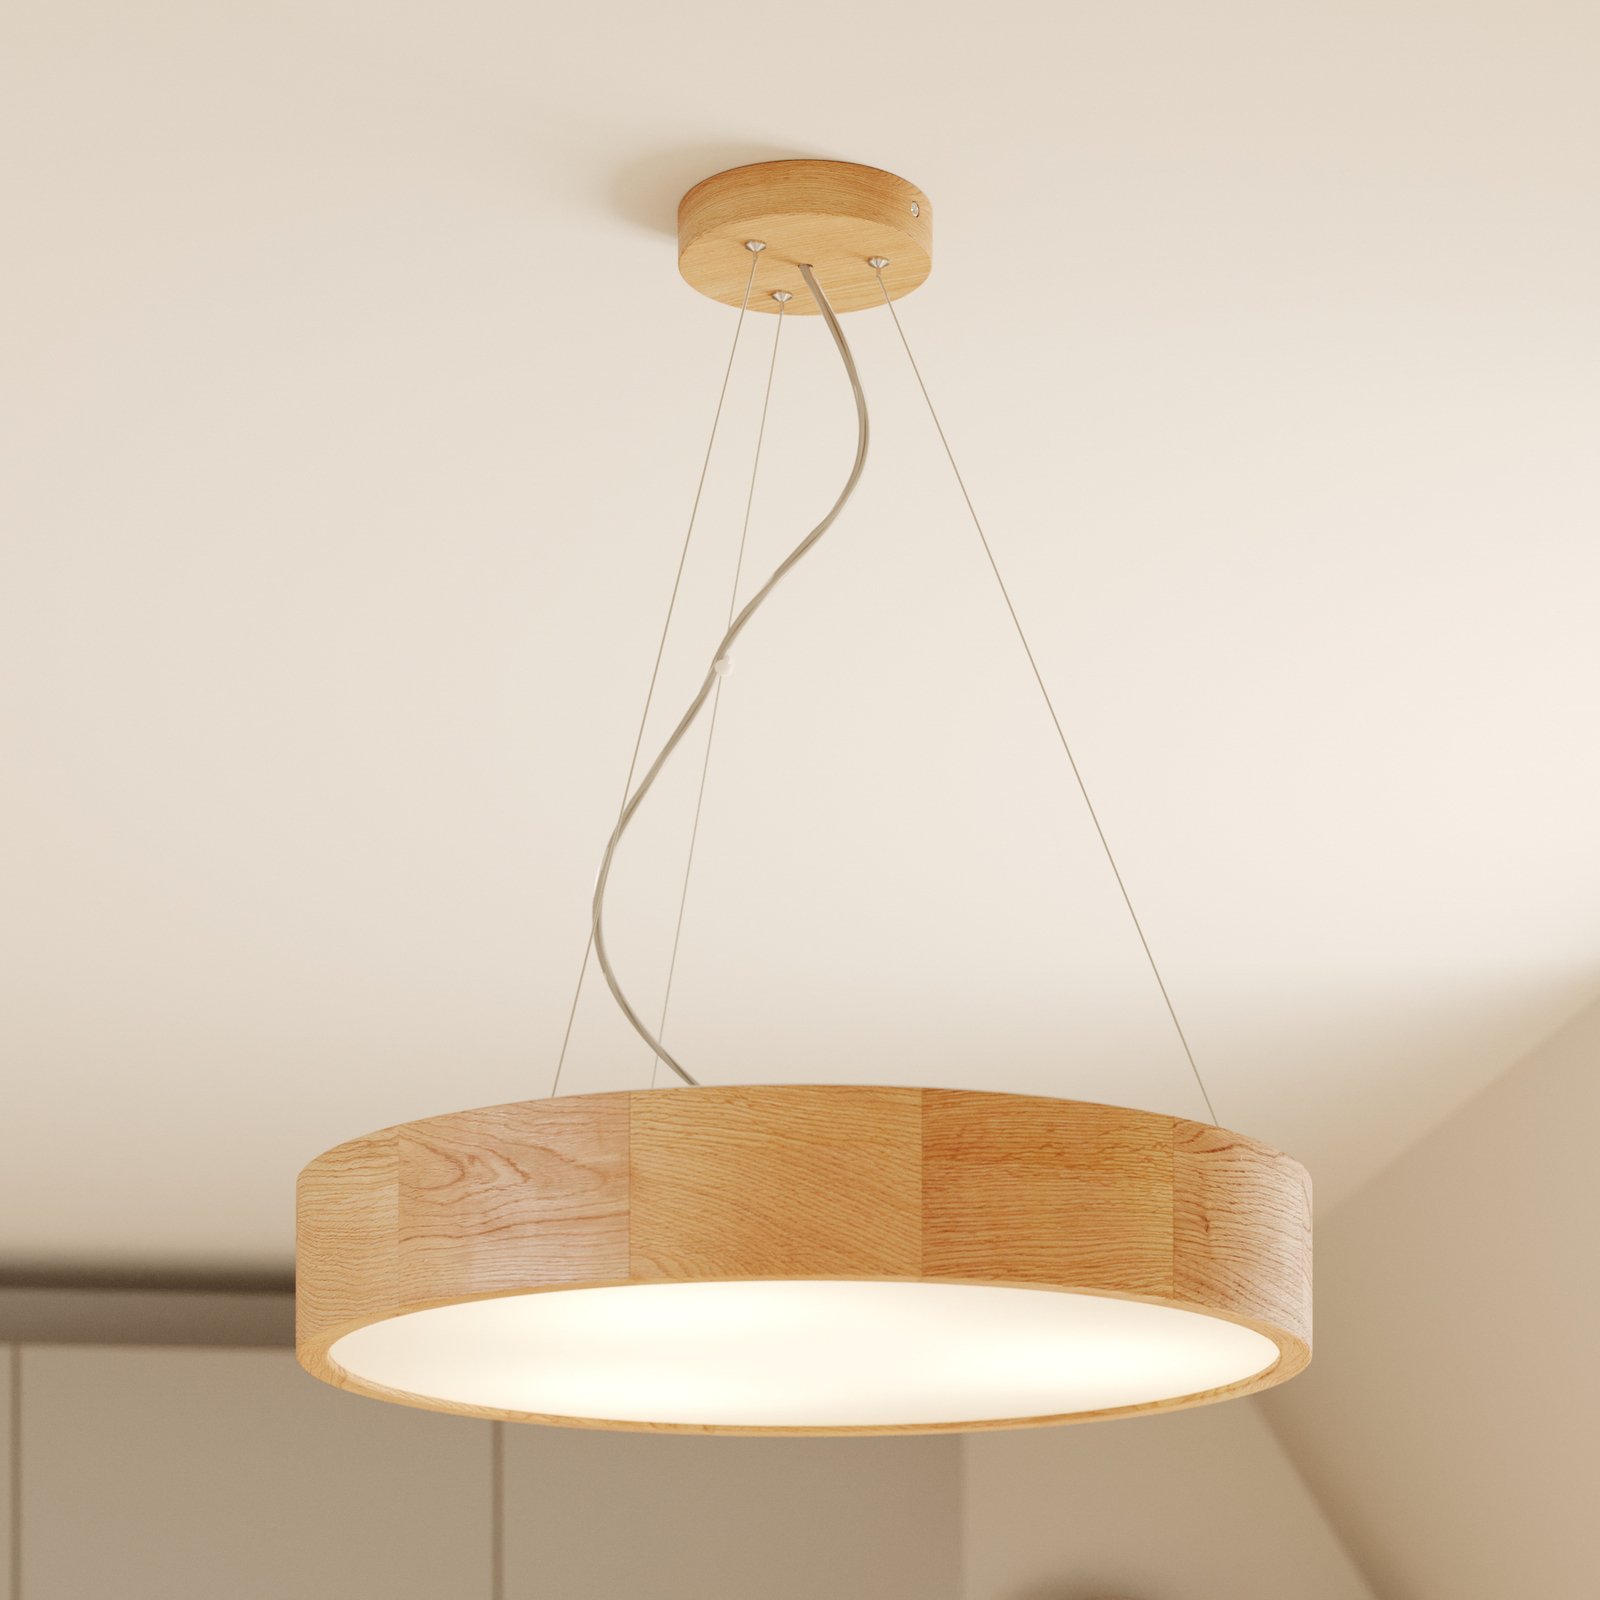 Kerio hanglamp, Ø 47 cm, eiken